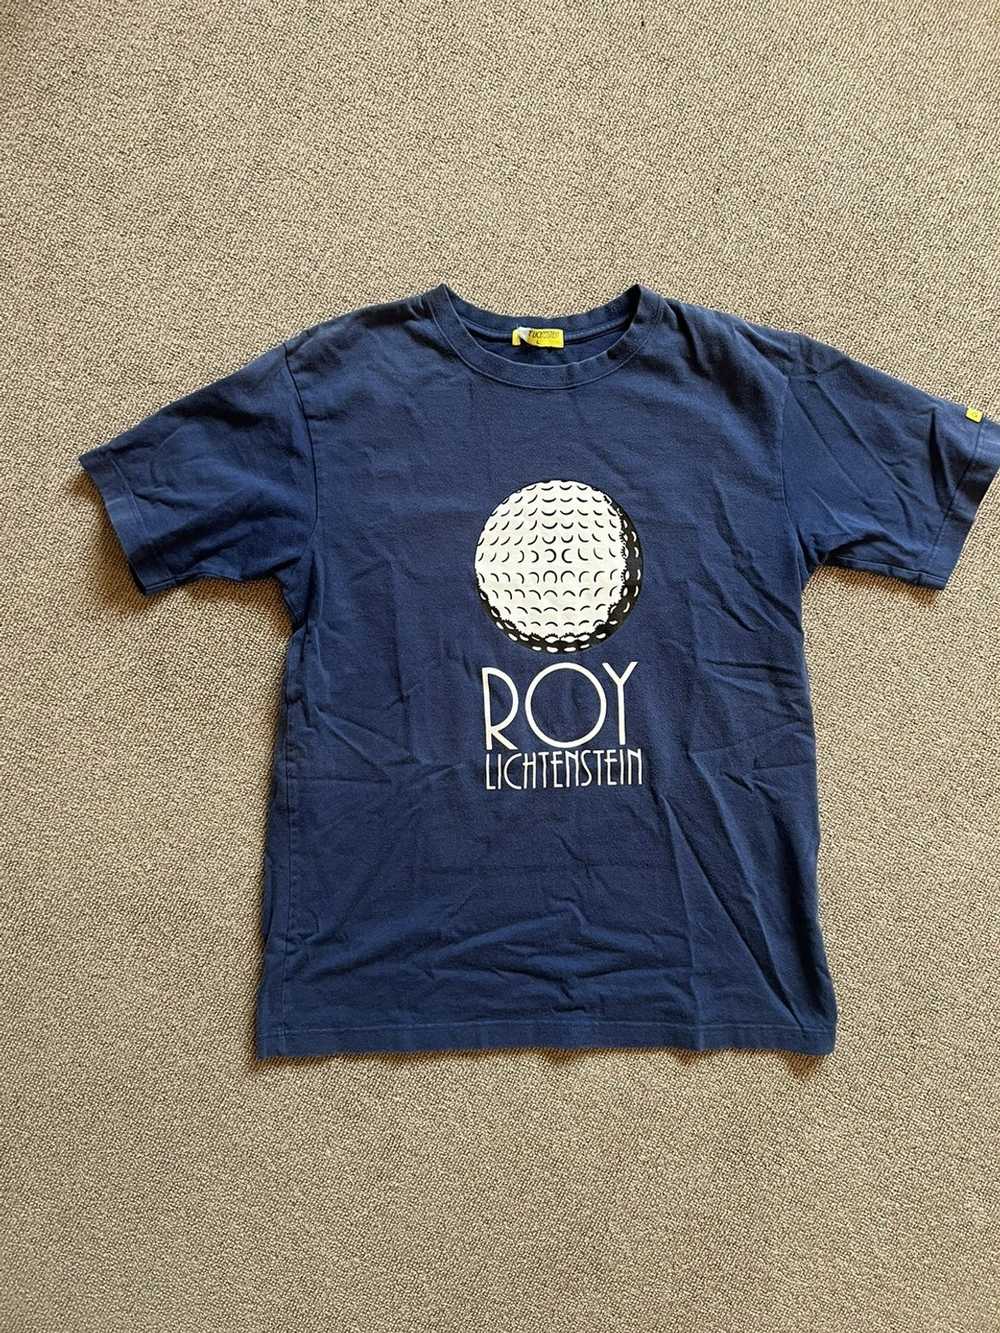 Vintage Roy Lichtenstein golf ball t shirt tee - image 1